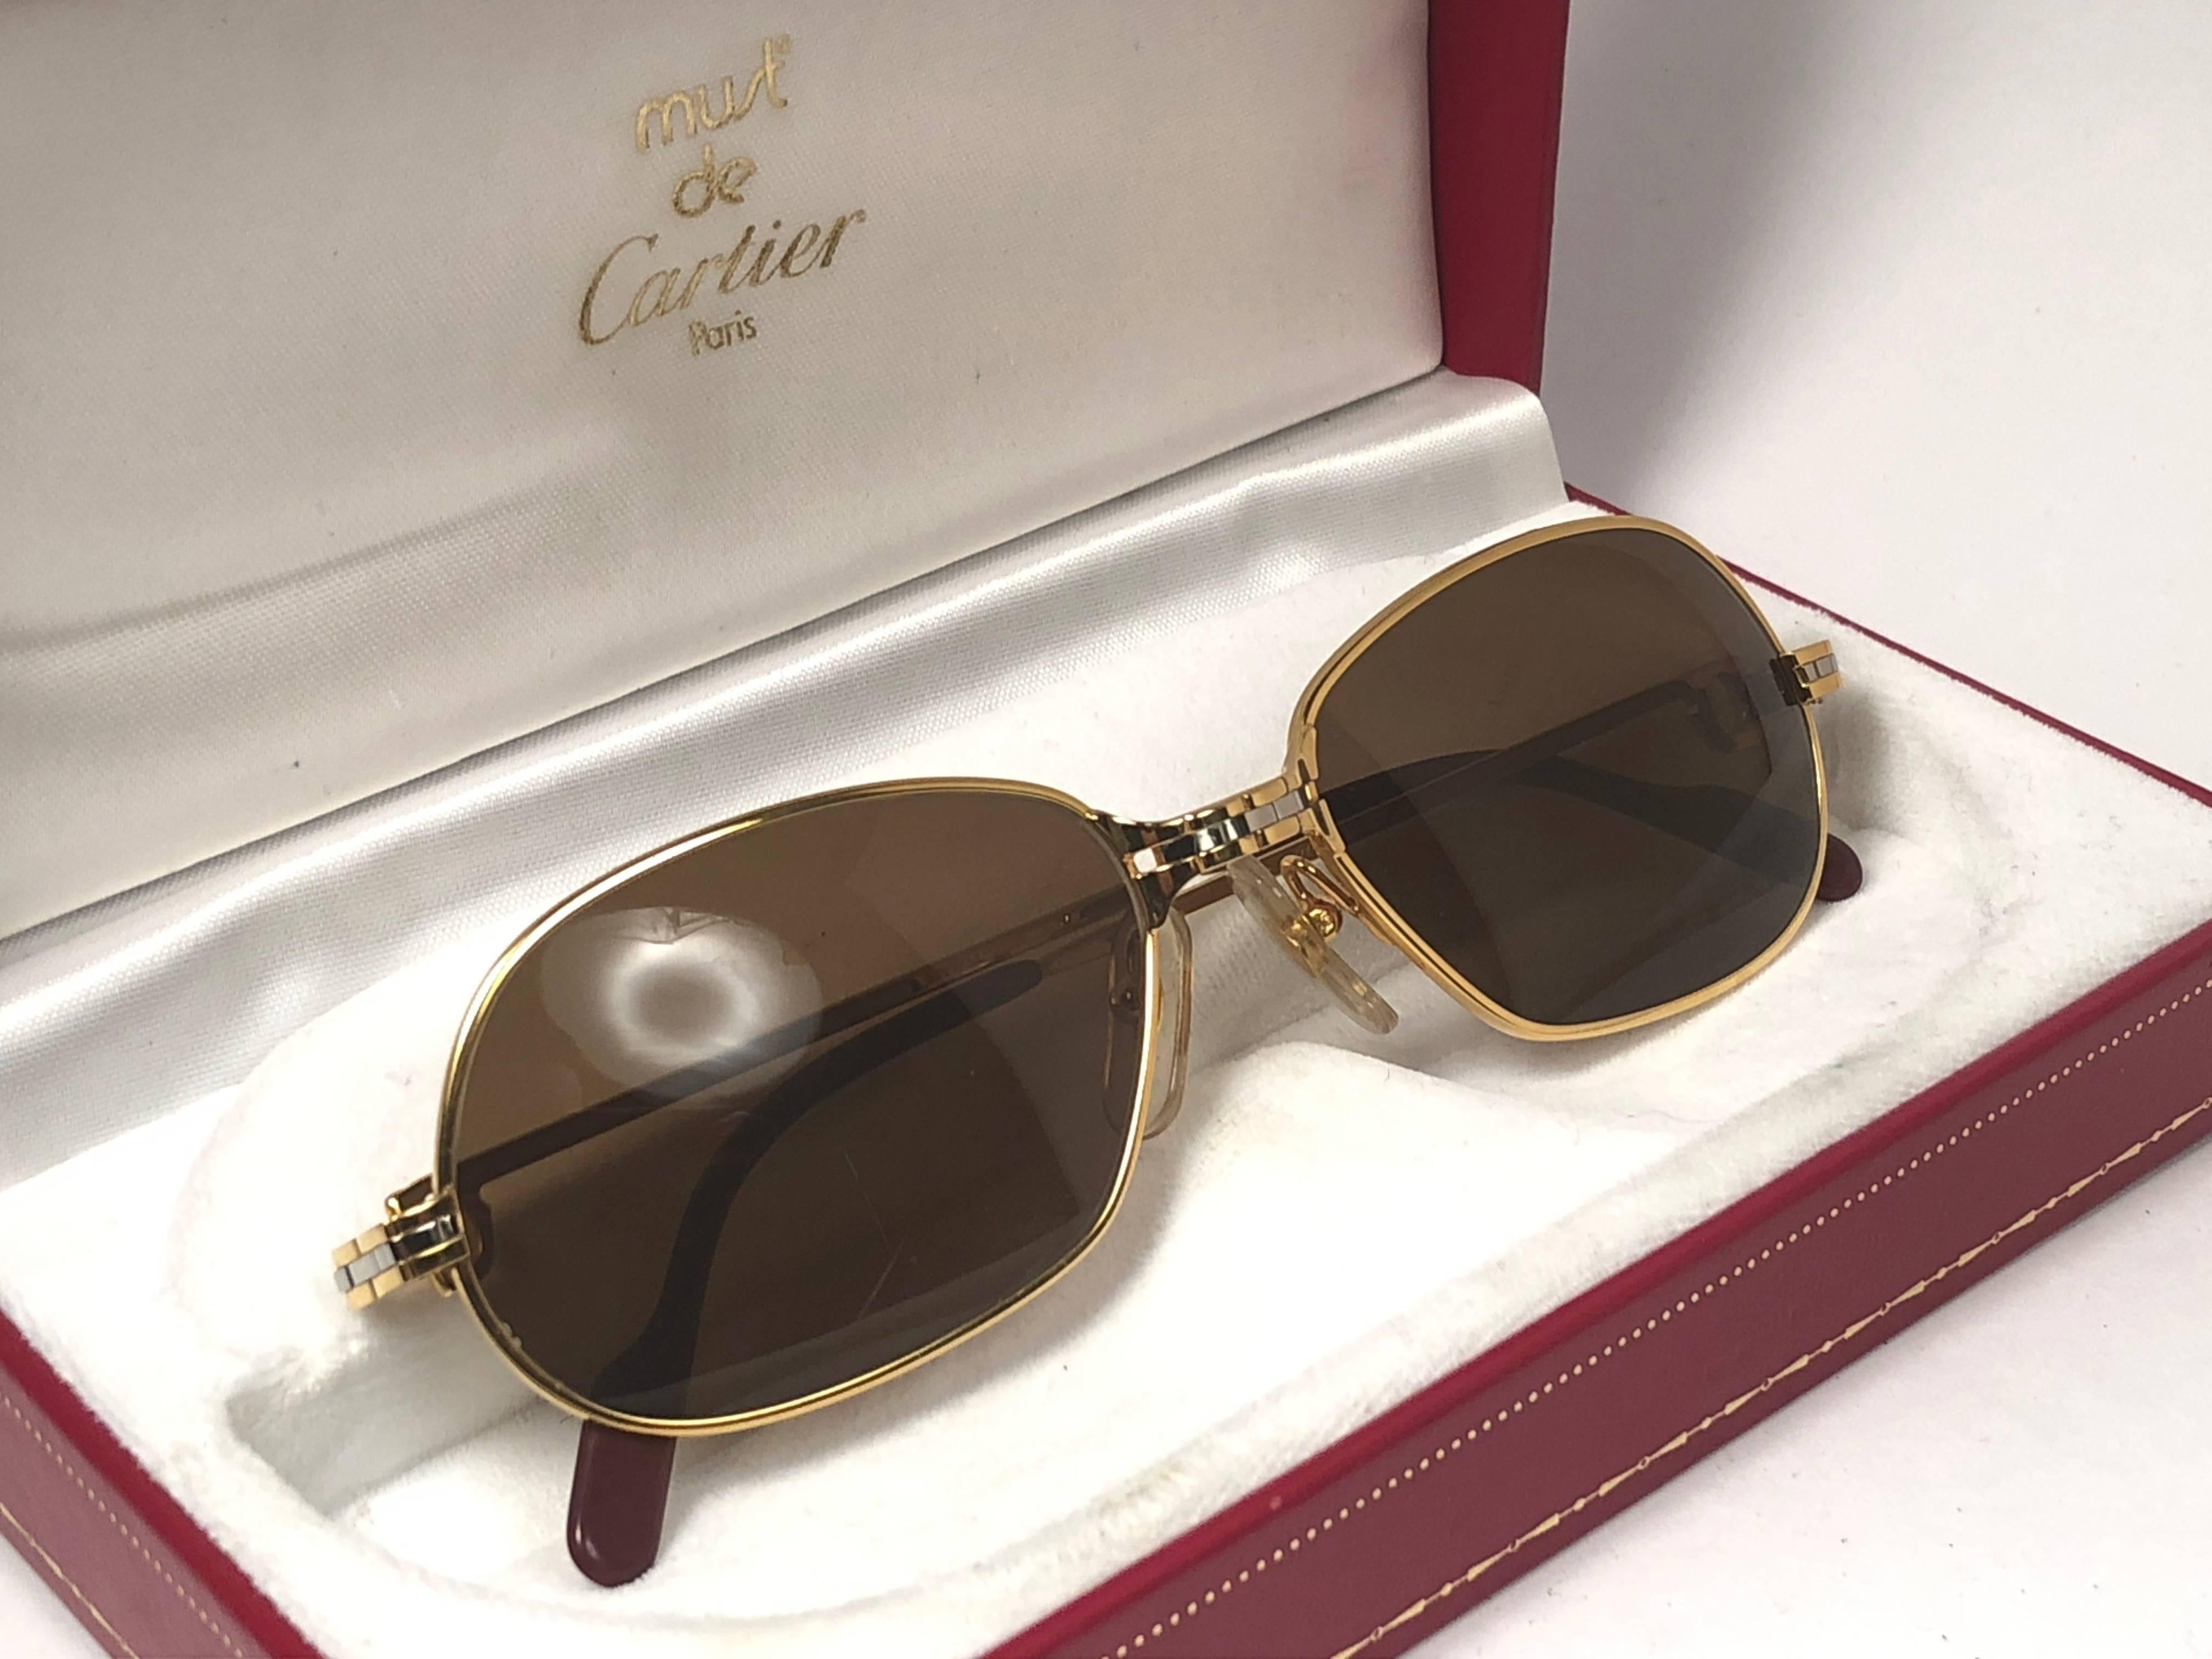 New 1988 Cartier Panthere GM sunglasses with solid brown  (protection contre les UV).  Le cadre est avec le recto et les côtés en or jaune et blanc. Tous les poinçons sont présents. Les palettes d'oreilles sont de couleur bordeaux. 
Les deux bras